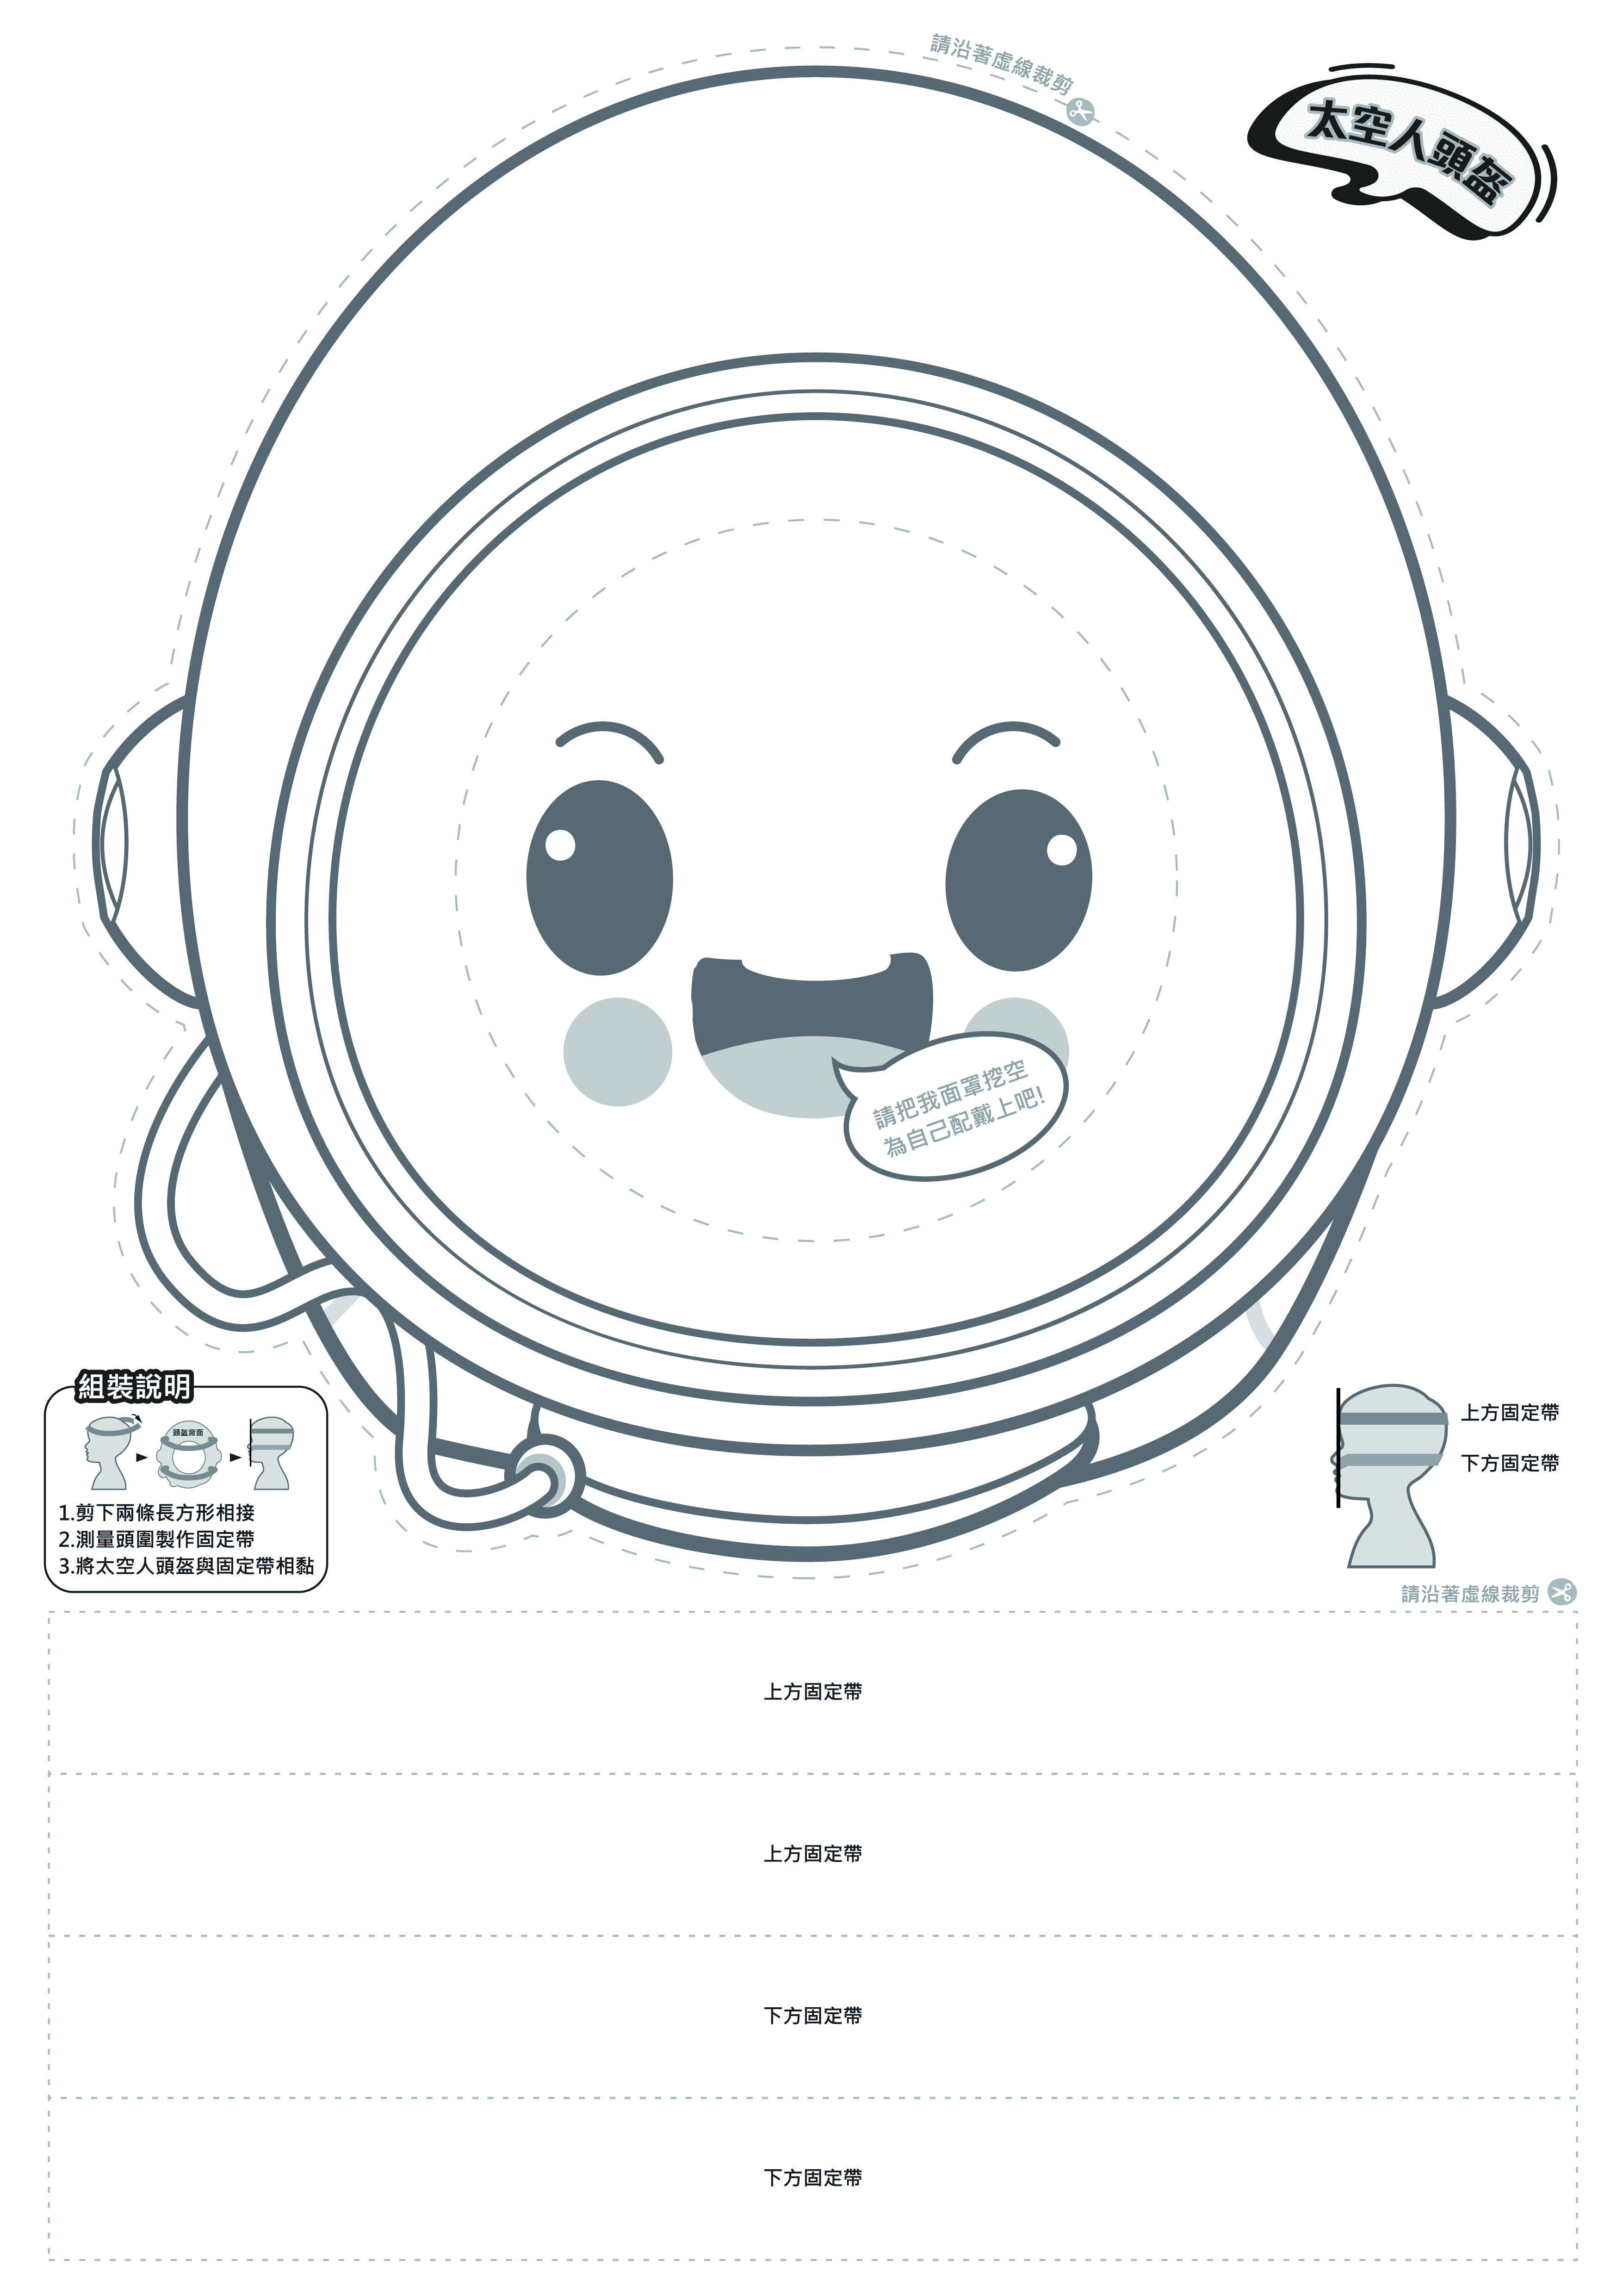 太空人頭盔-下載版A3尺寸